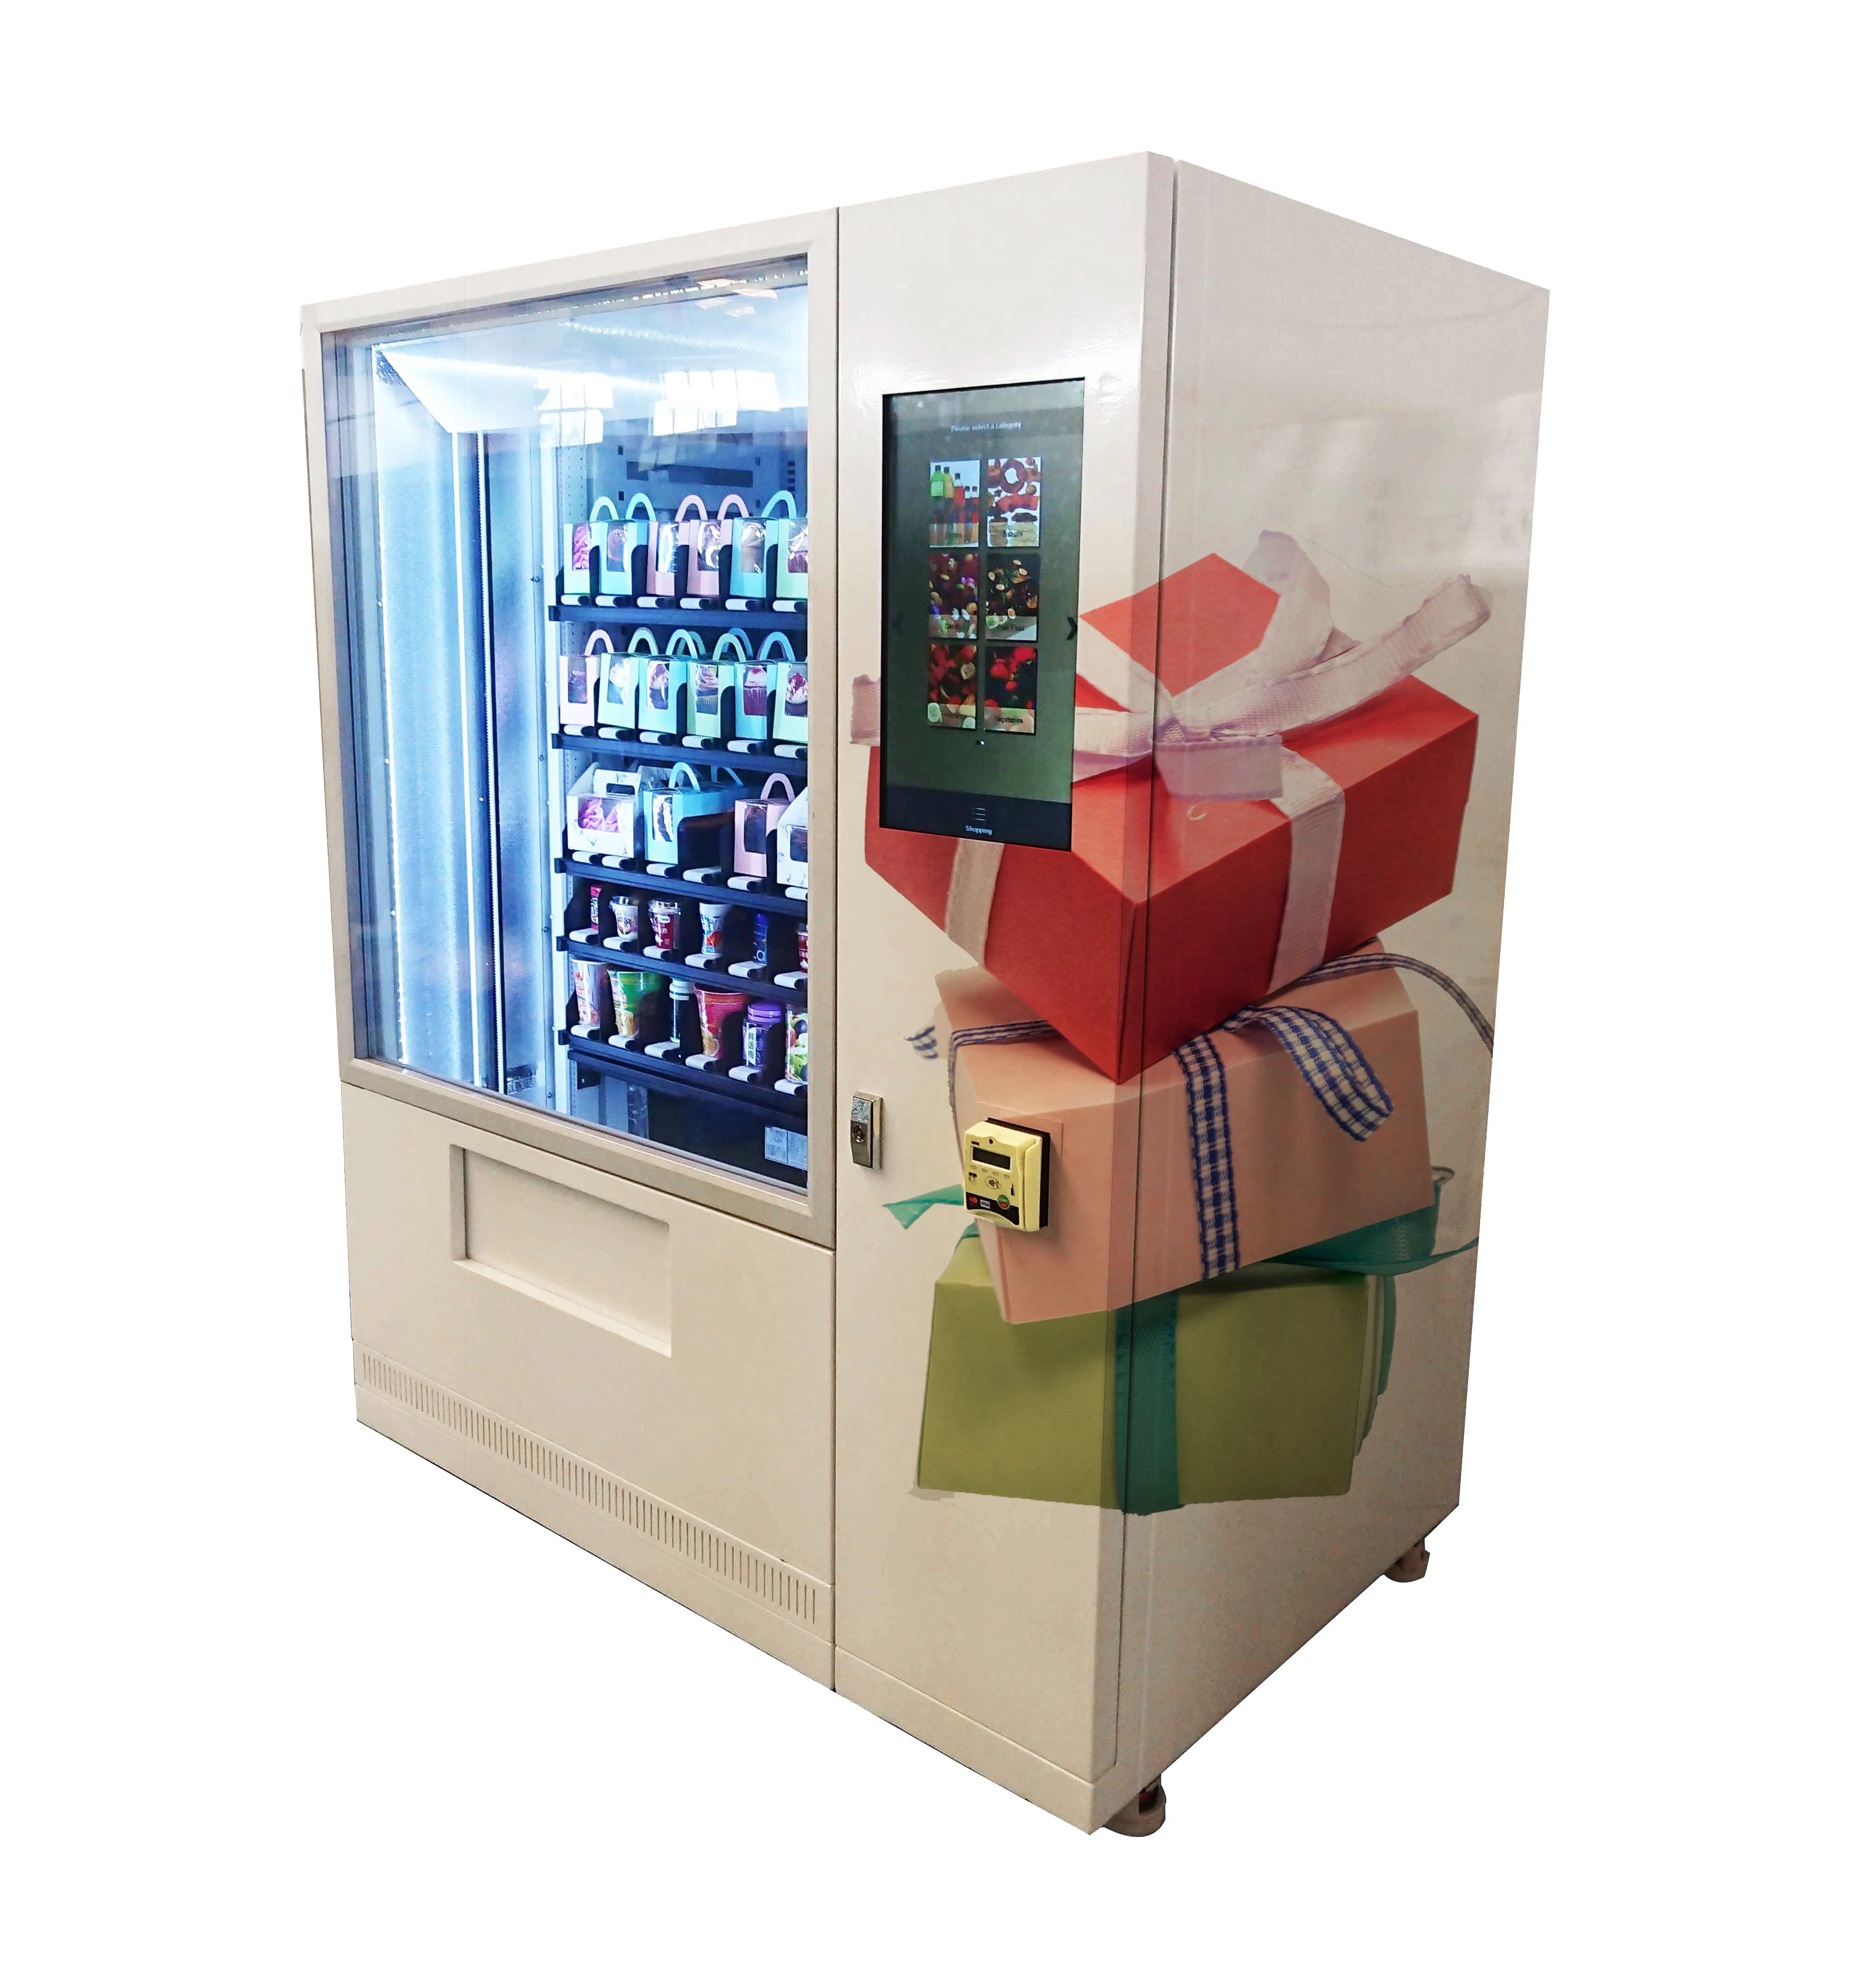 Роза Гвоздика Жасмин свежий цветок мини mart торговый автомат с дистанционным управлением большой сенсорный экран Показать